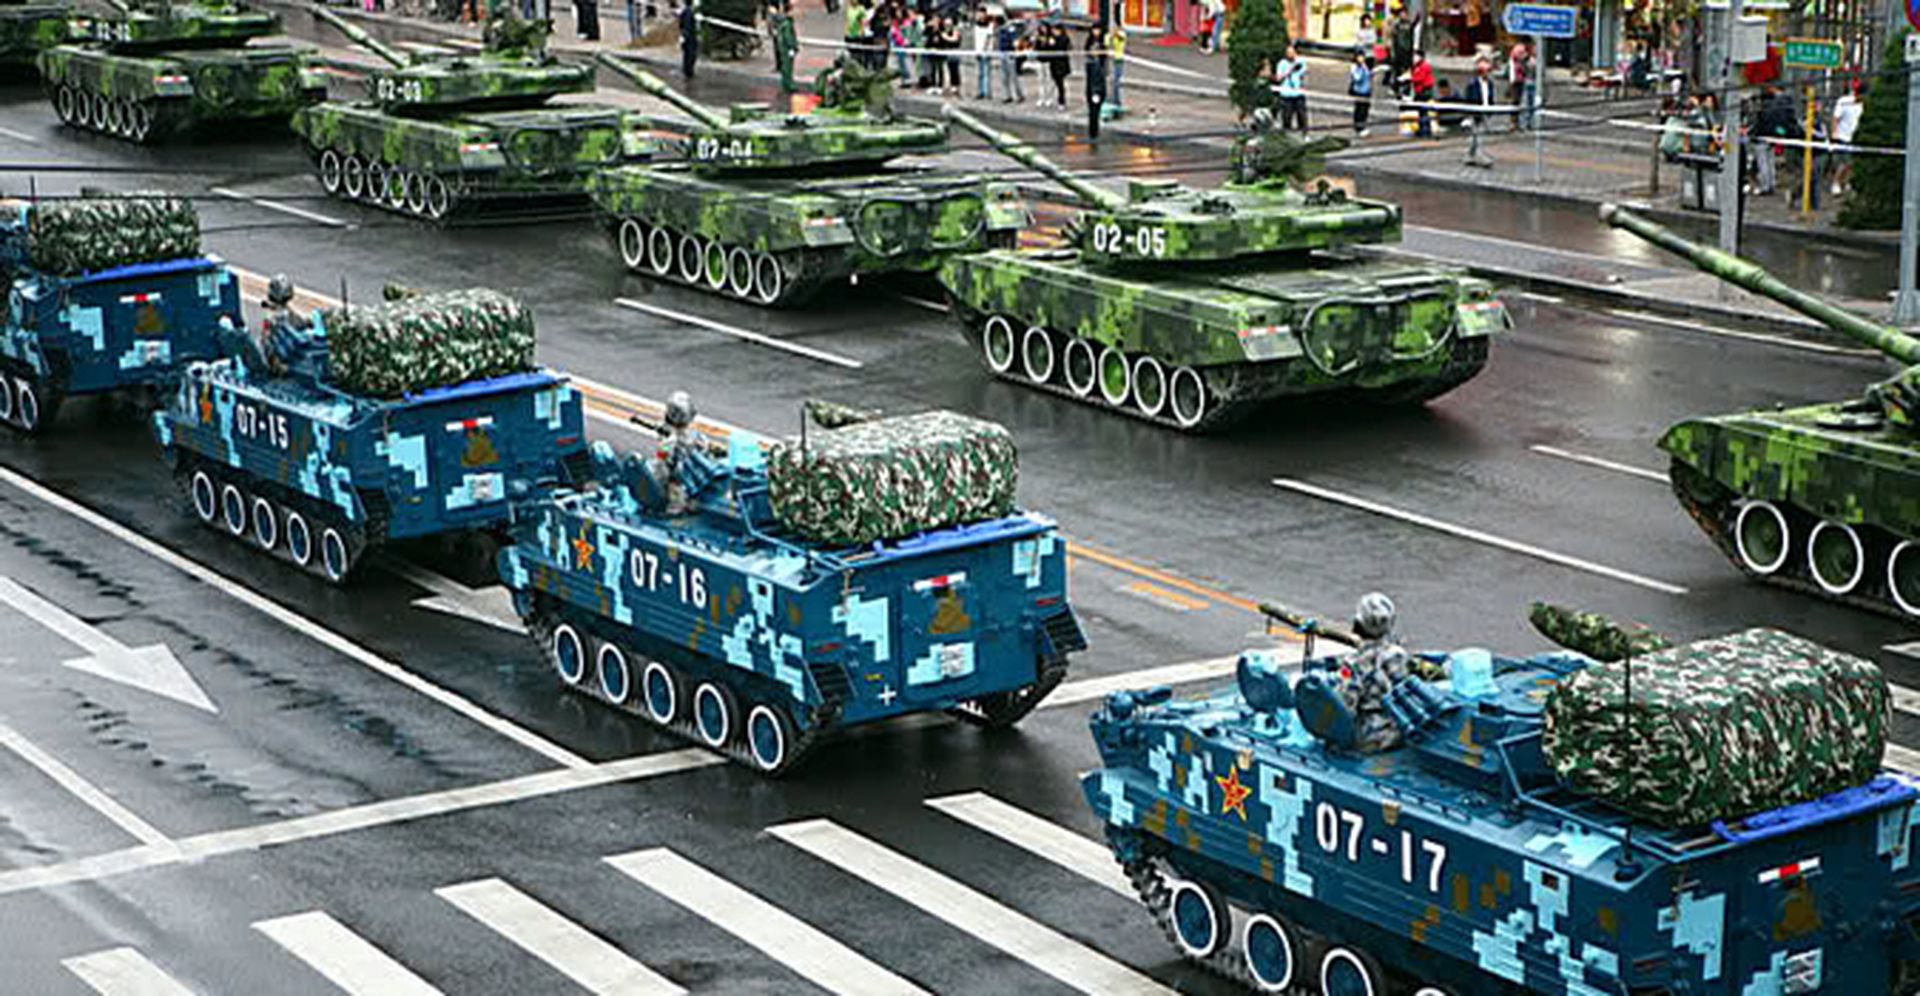 tanques camuflados digitalmente plaza tiananmen